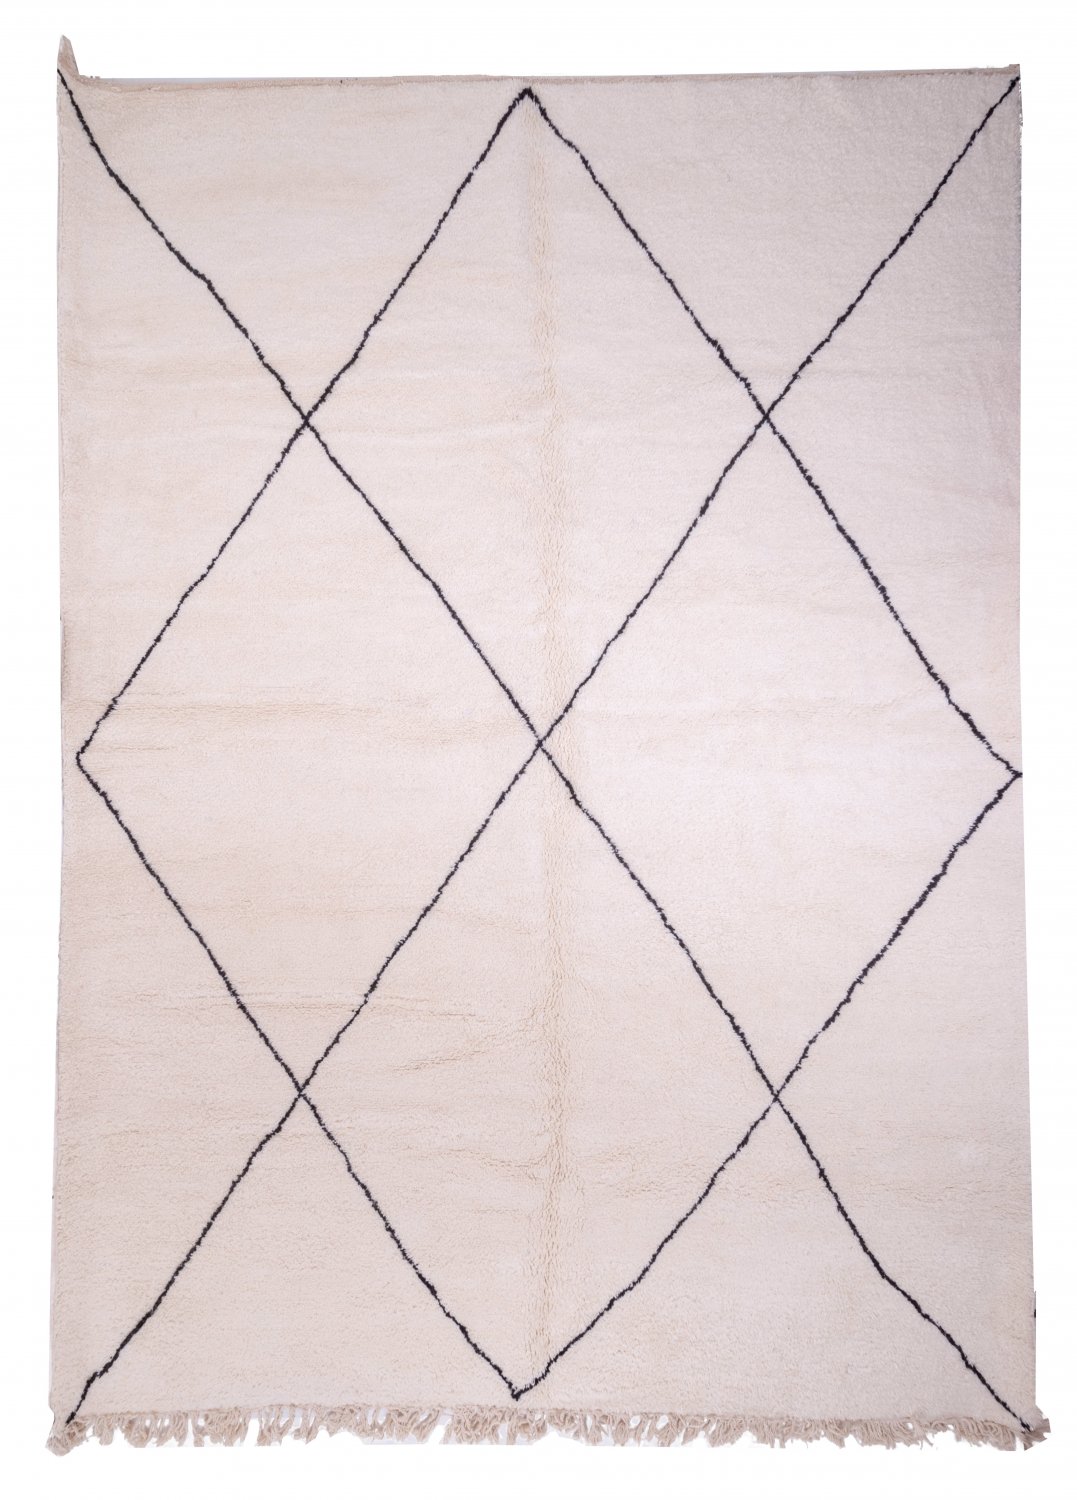 Marokkolainen Kilim matto Beni Ouarain 430 x 320 cm